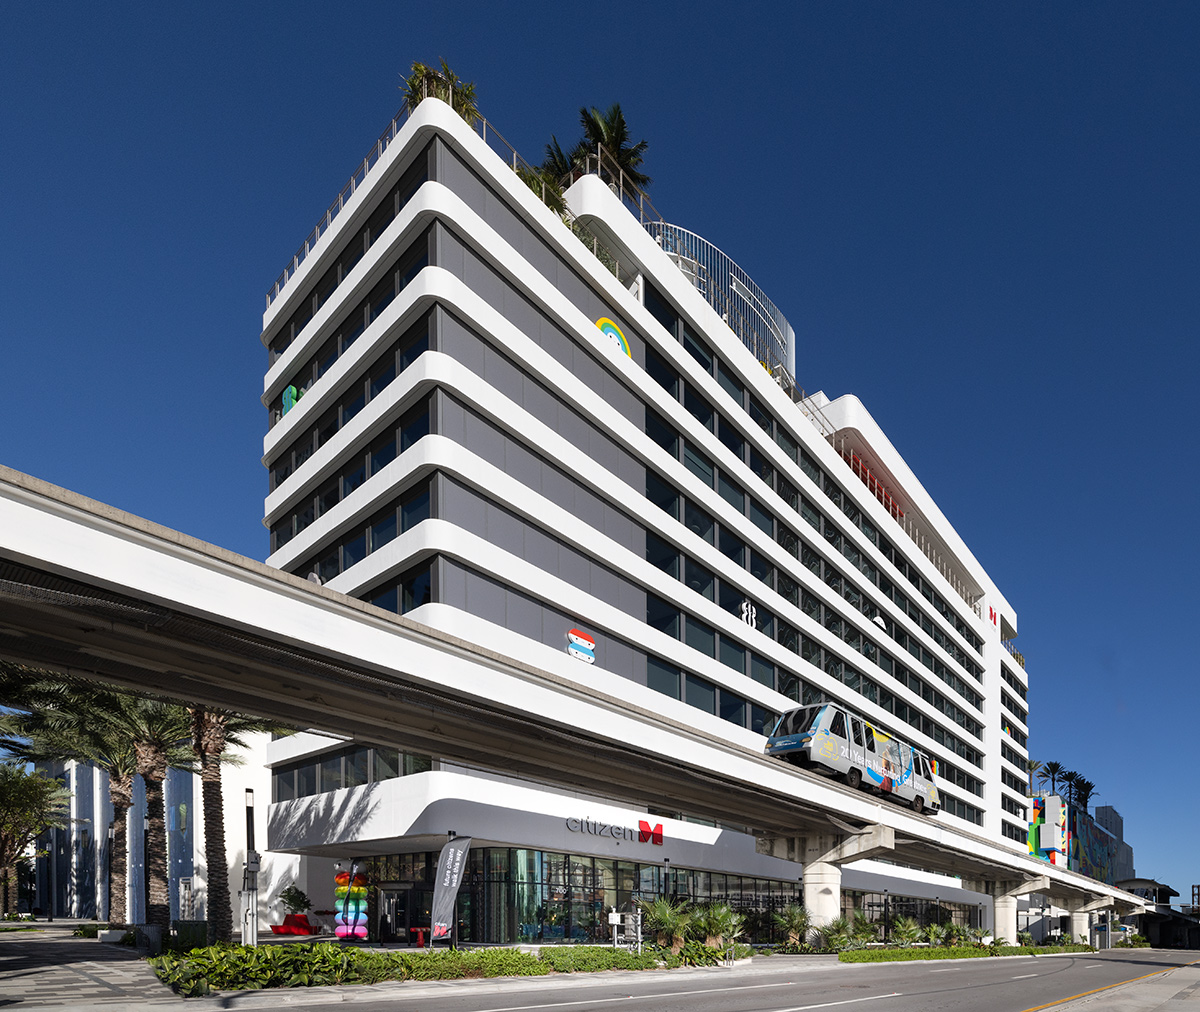 Architectural view of the Citizen M hotel in Miami, FL.